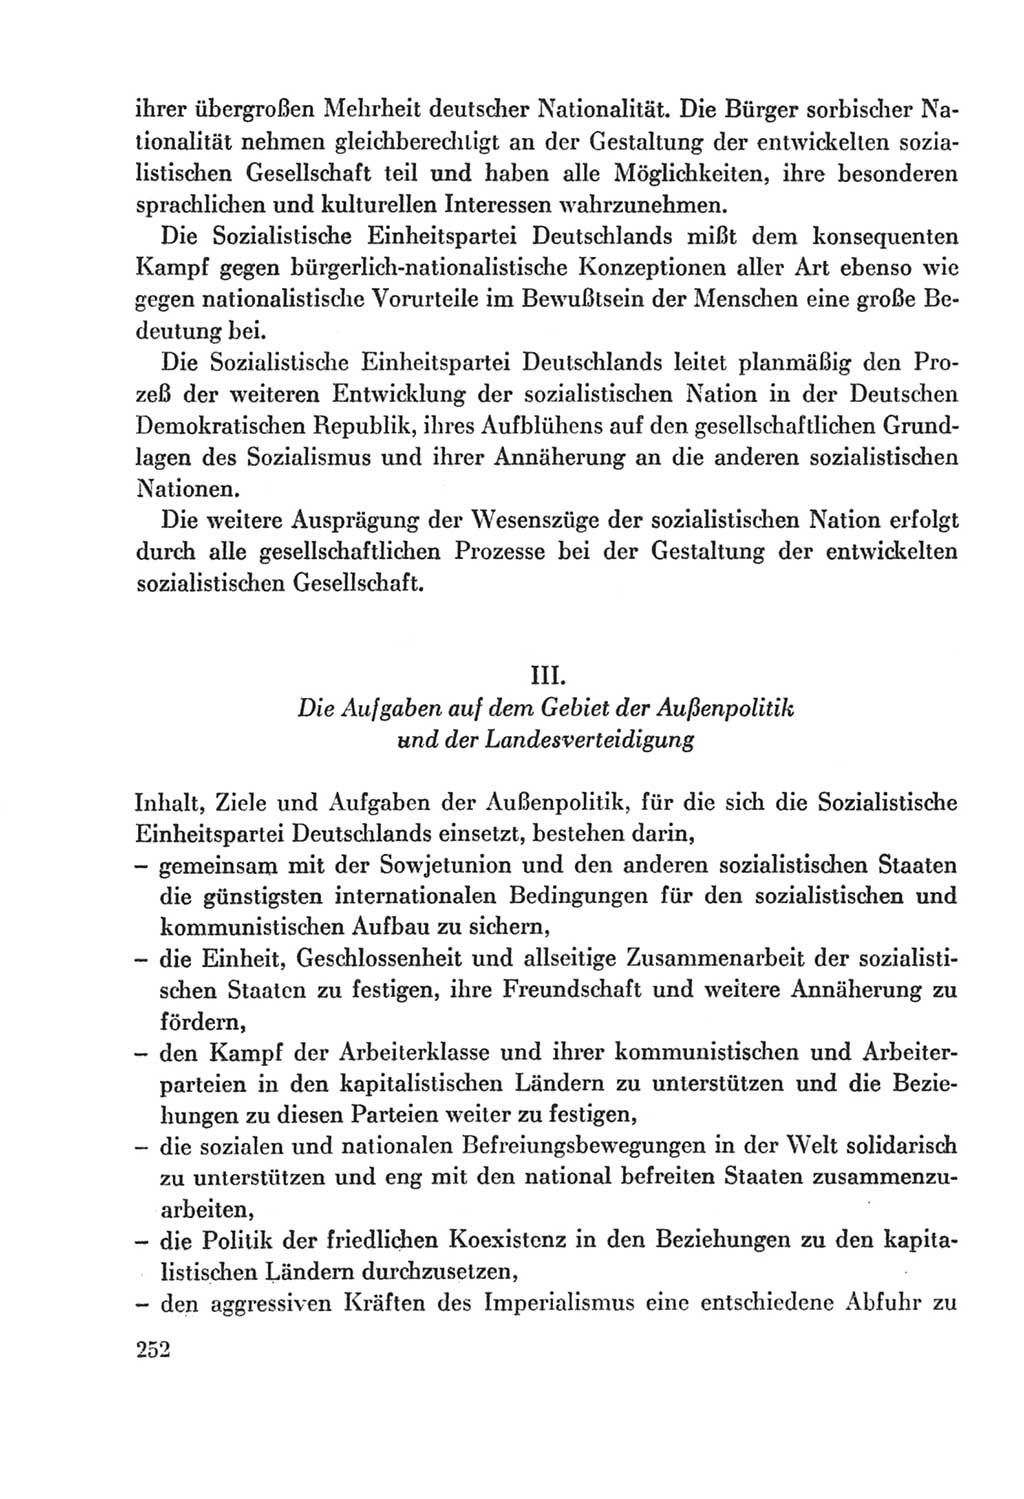 Protokoll der Verhandlungen des Ⅸ. Parteitages der Sozialistischen Einheitspartei Deutschlands (SED) [Deutsche Demokratische Republik (DDR)] 1976, Band 2, Seite 252 (Prot. Verh. Ⅸ. PT SED DDR 1976, Bd. 2, S. 252)